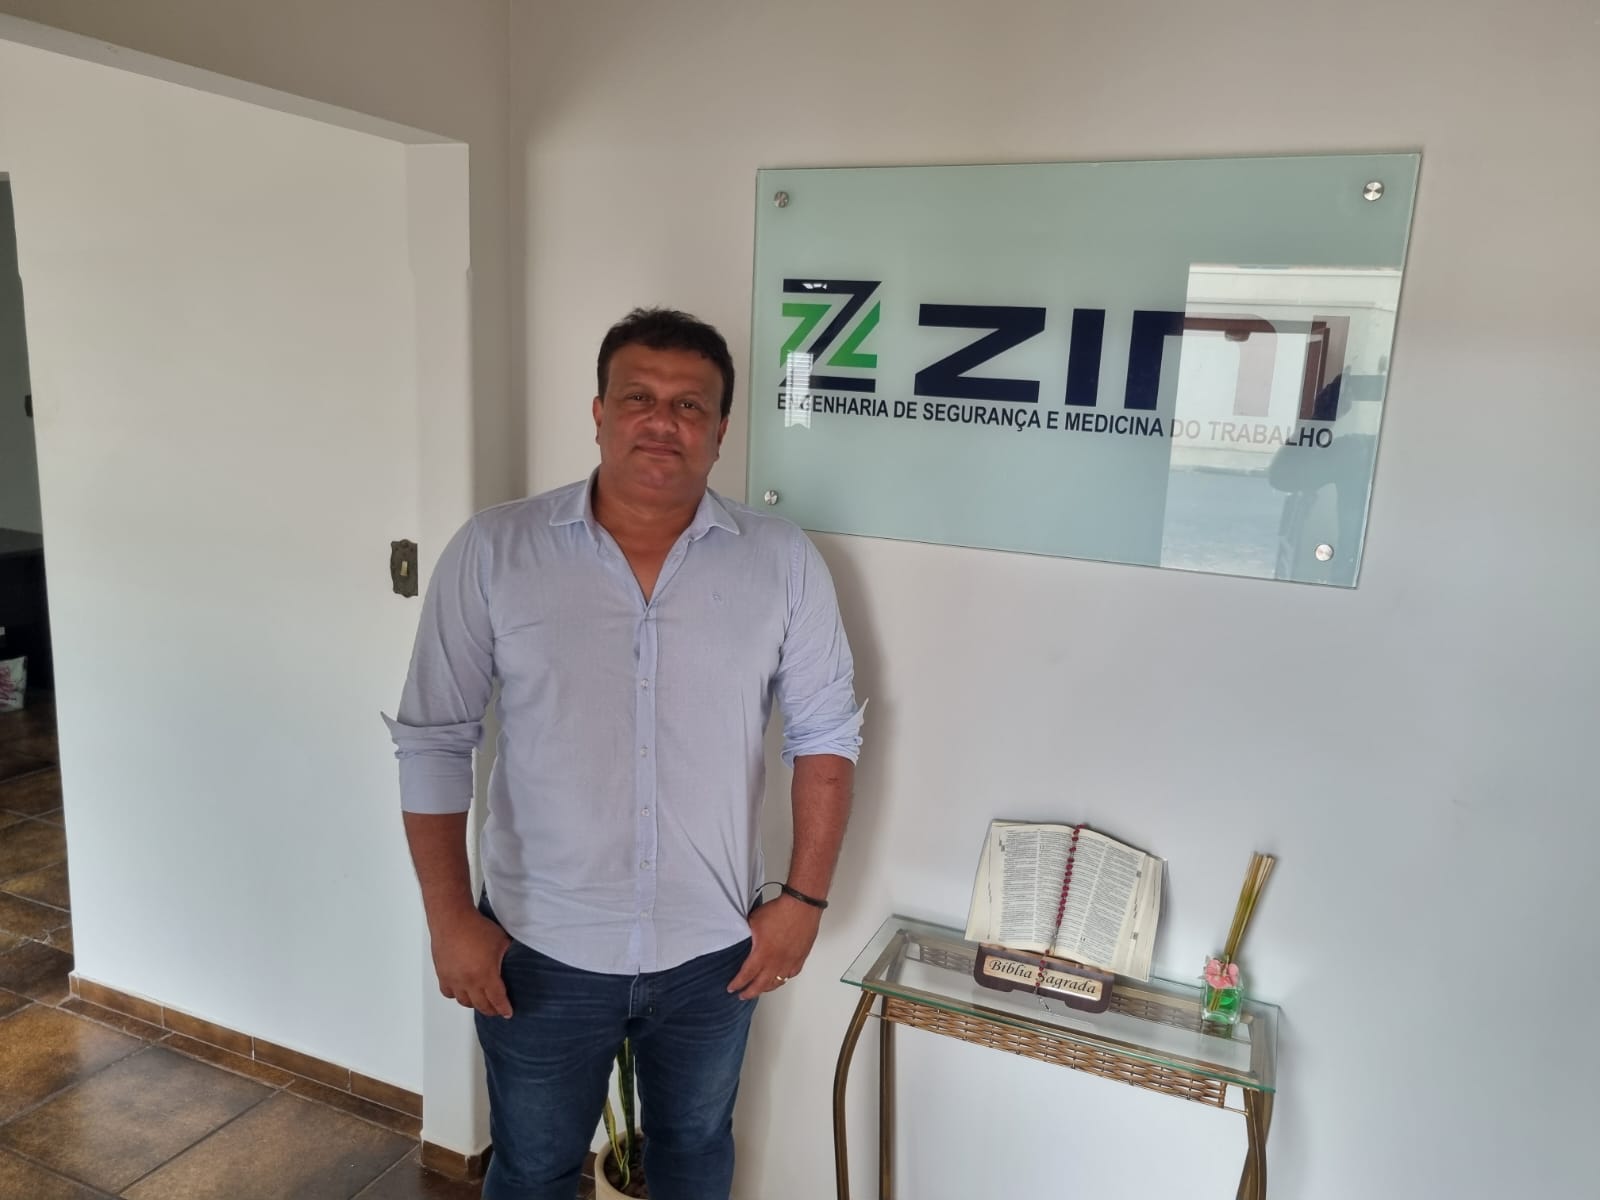 Erico Zini inaugura empreendimento focado em engenharia de segurança e medicina do trabalho